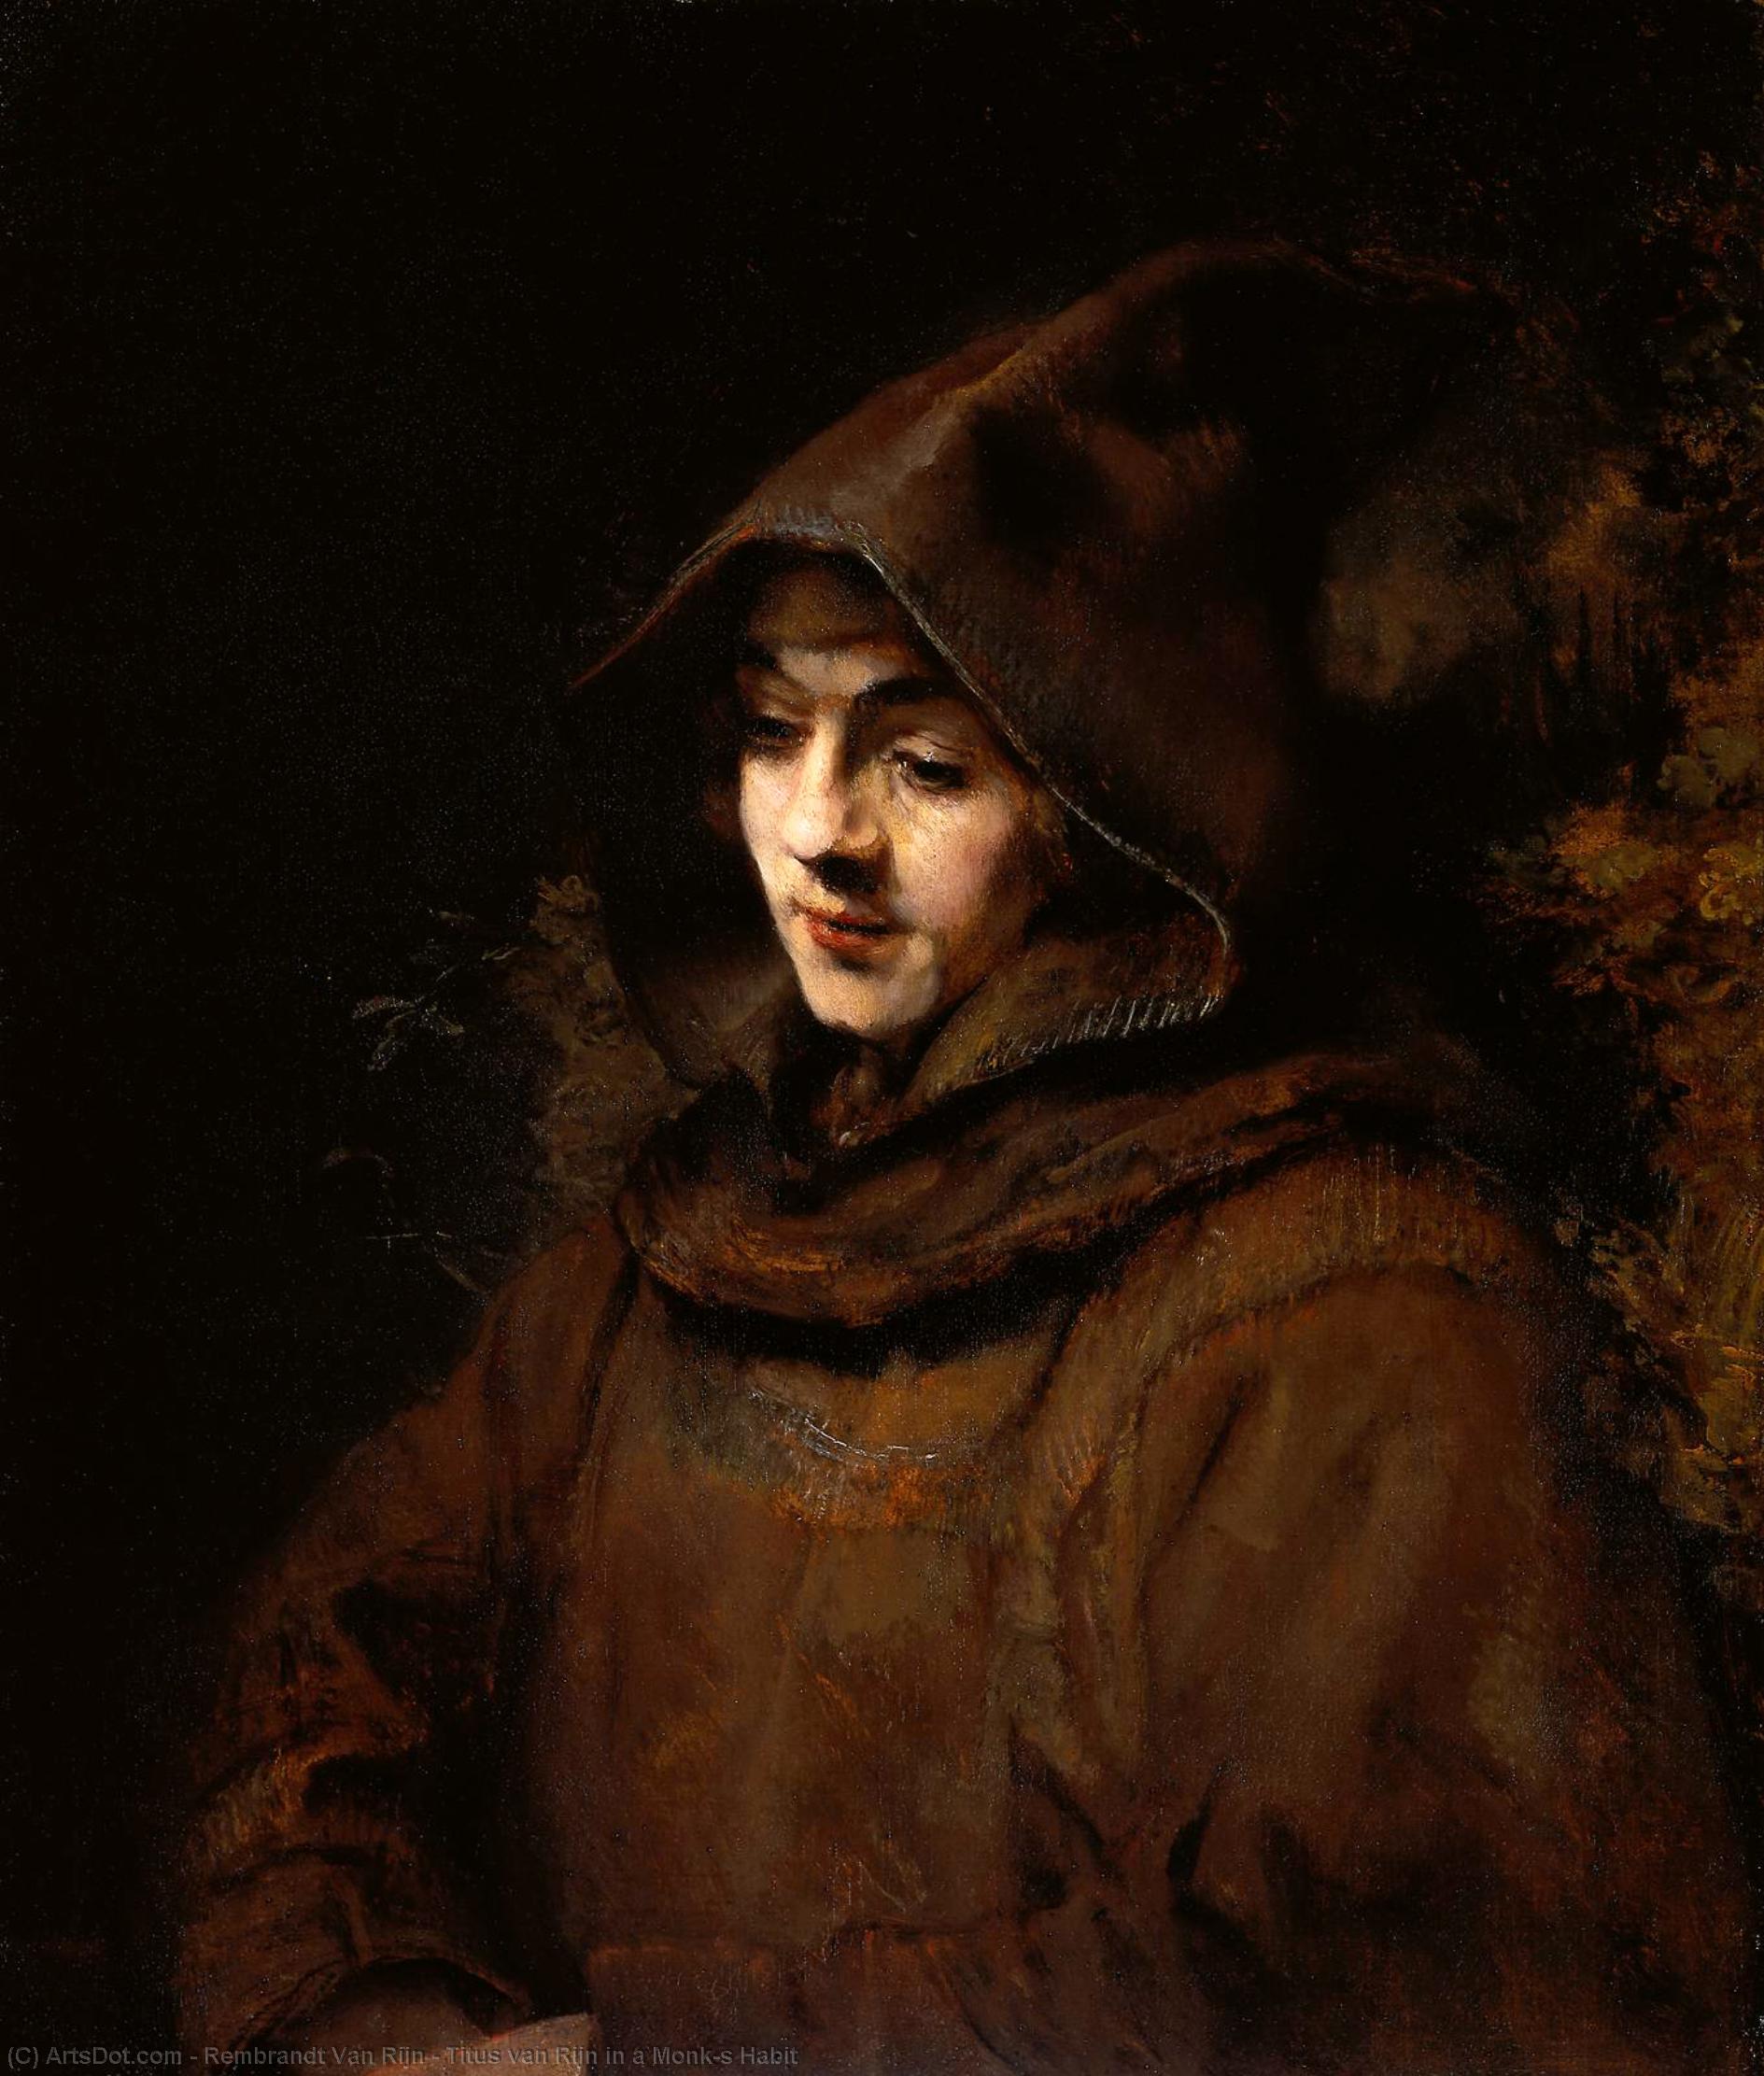 Wikoo.org - موسوعة الفنون الجميلة - اللوحة، العمل الفني Rembrandt Van Rijn - Titus van Rijn in a Monk's Habit